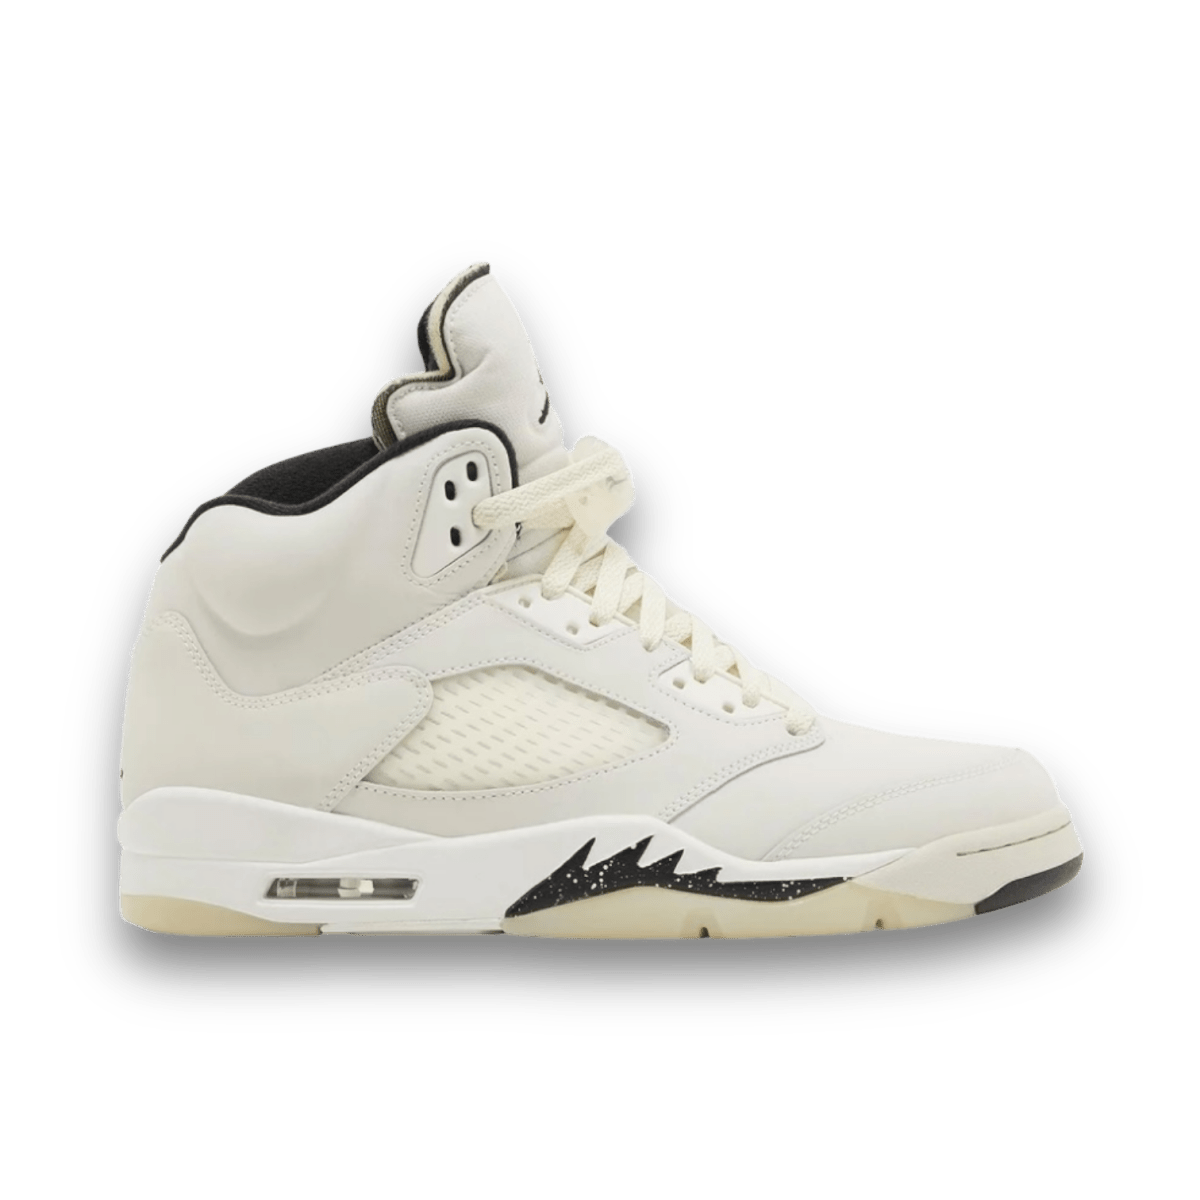 Air Jordan 5 Retro SE 'Sail' - Grade School - Mid Sneaker - Jawns on Fire Sneakers & Streetwear